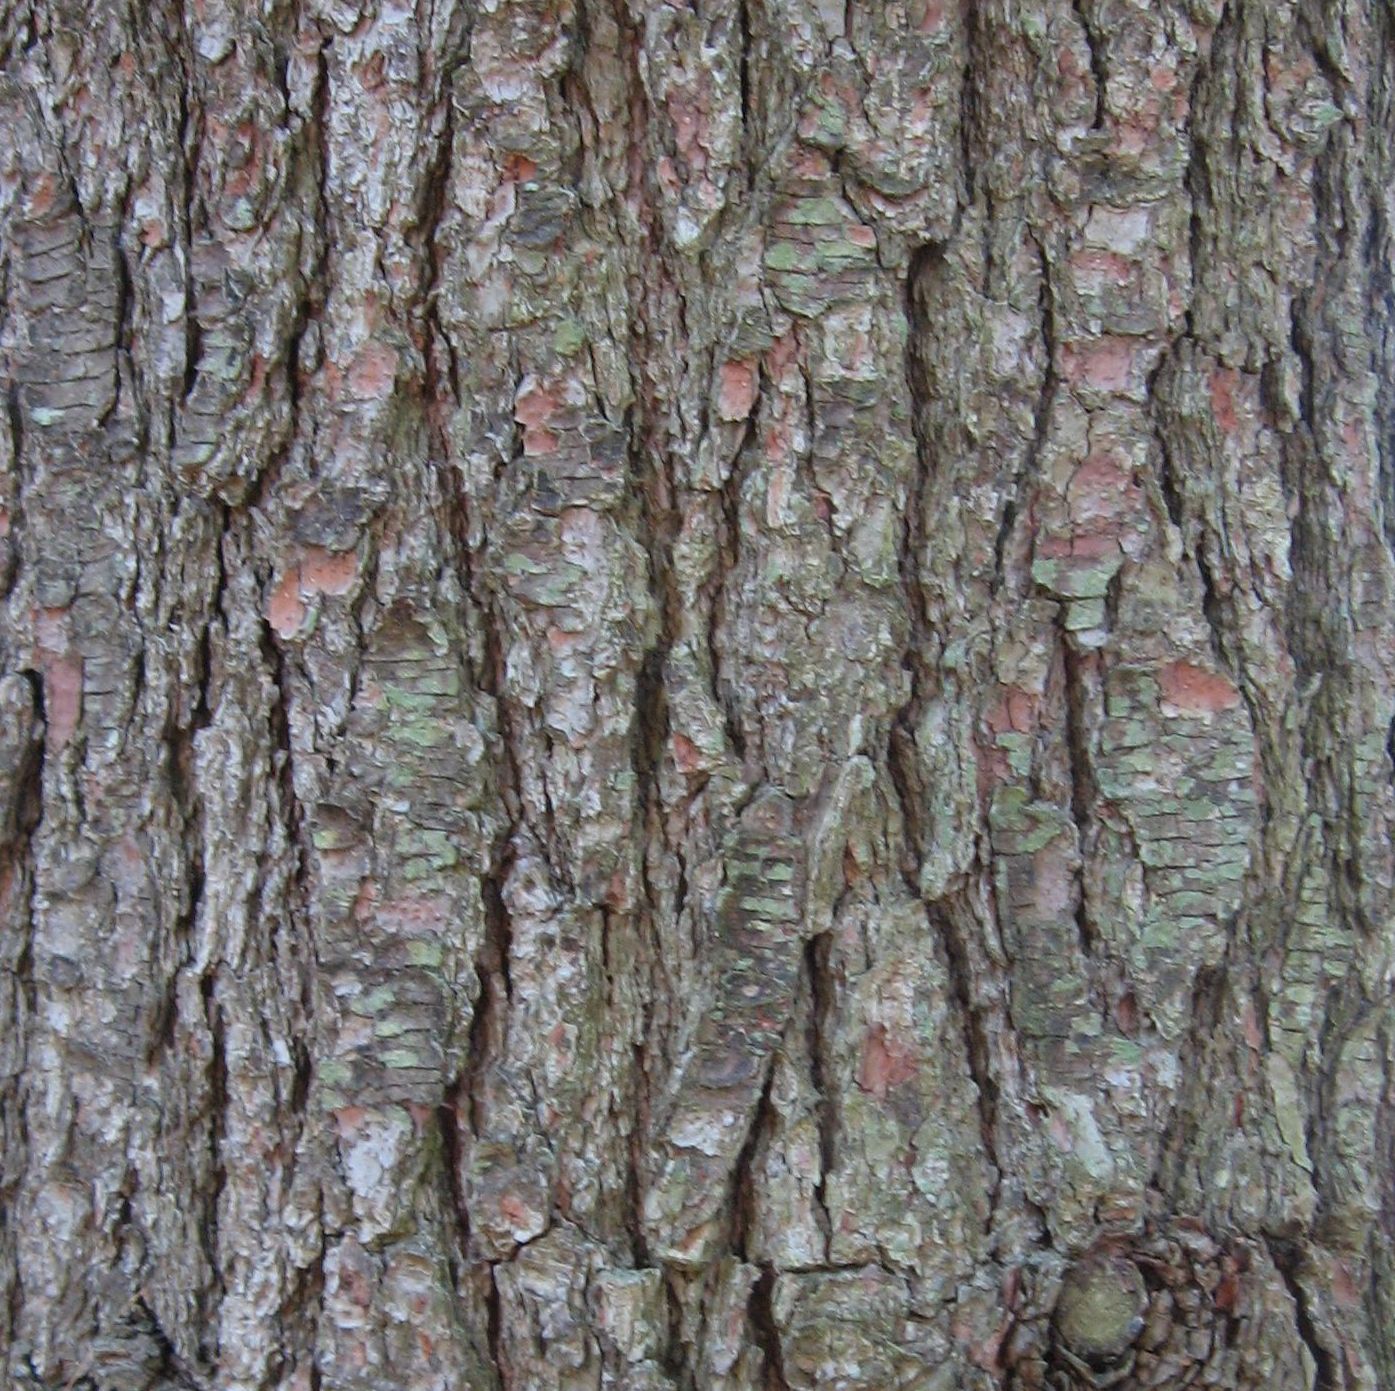 White Pine Tree Bark